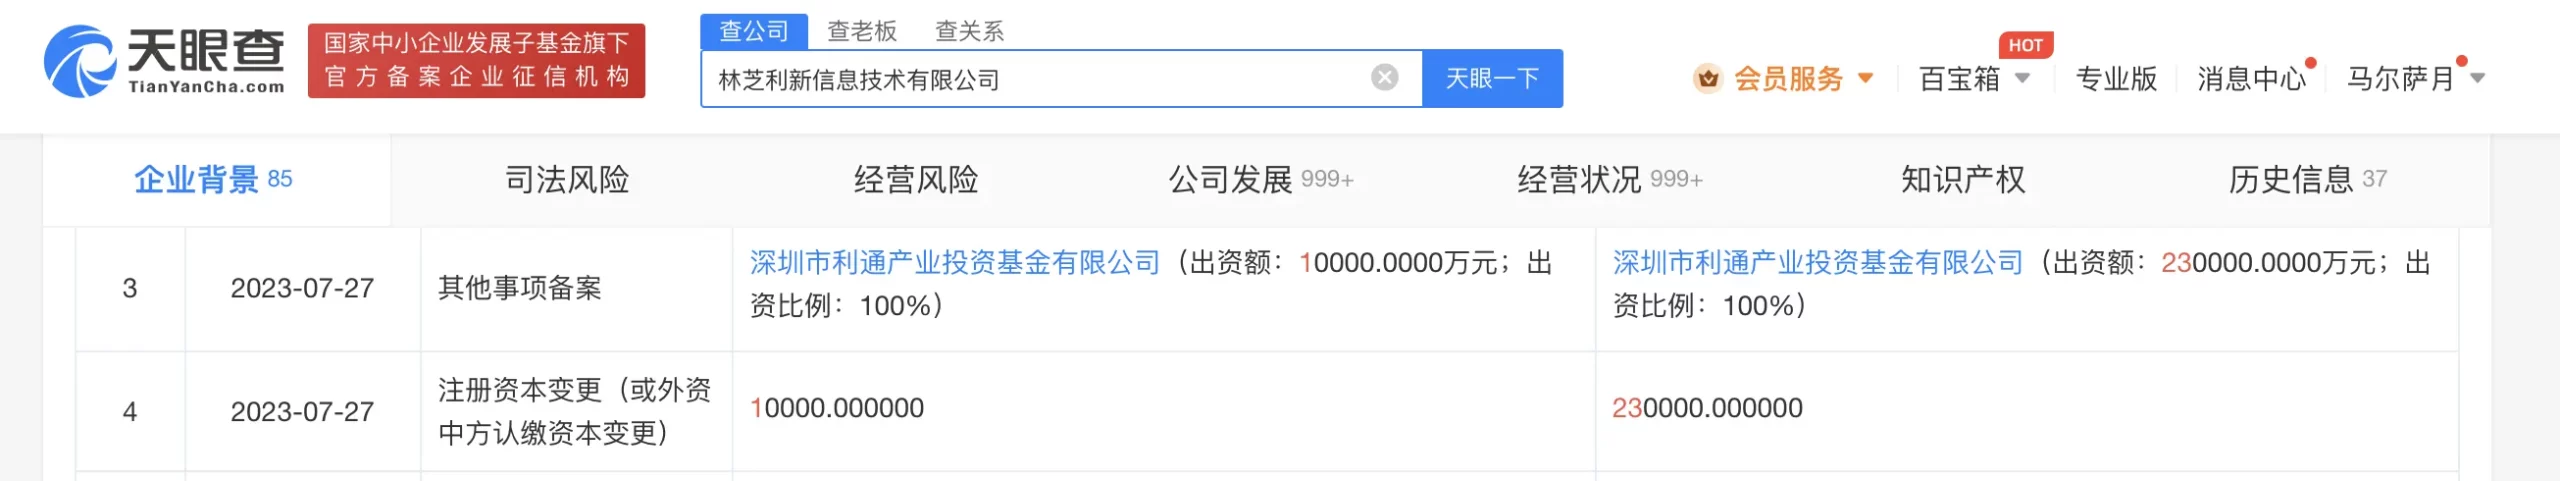 腾讯旗下林芝利新增资至23亿 增幅2200%